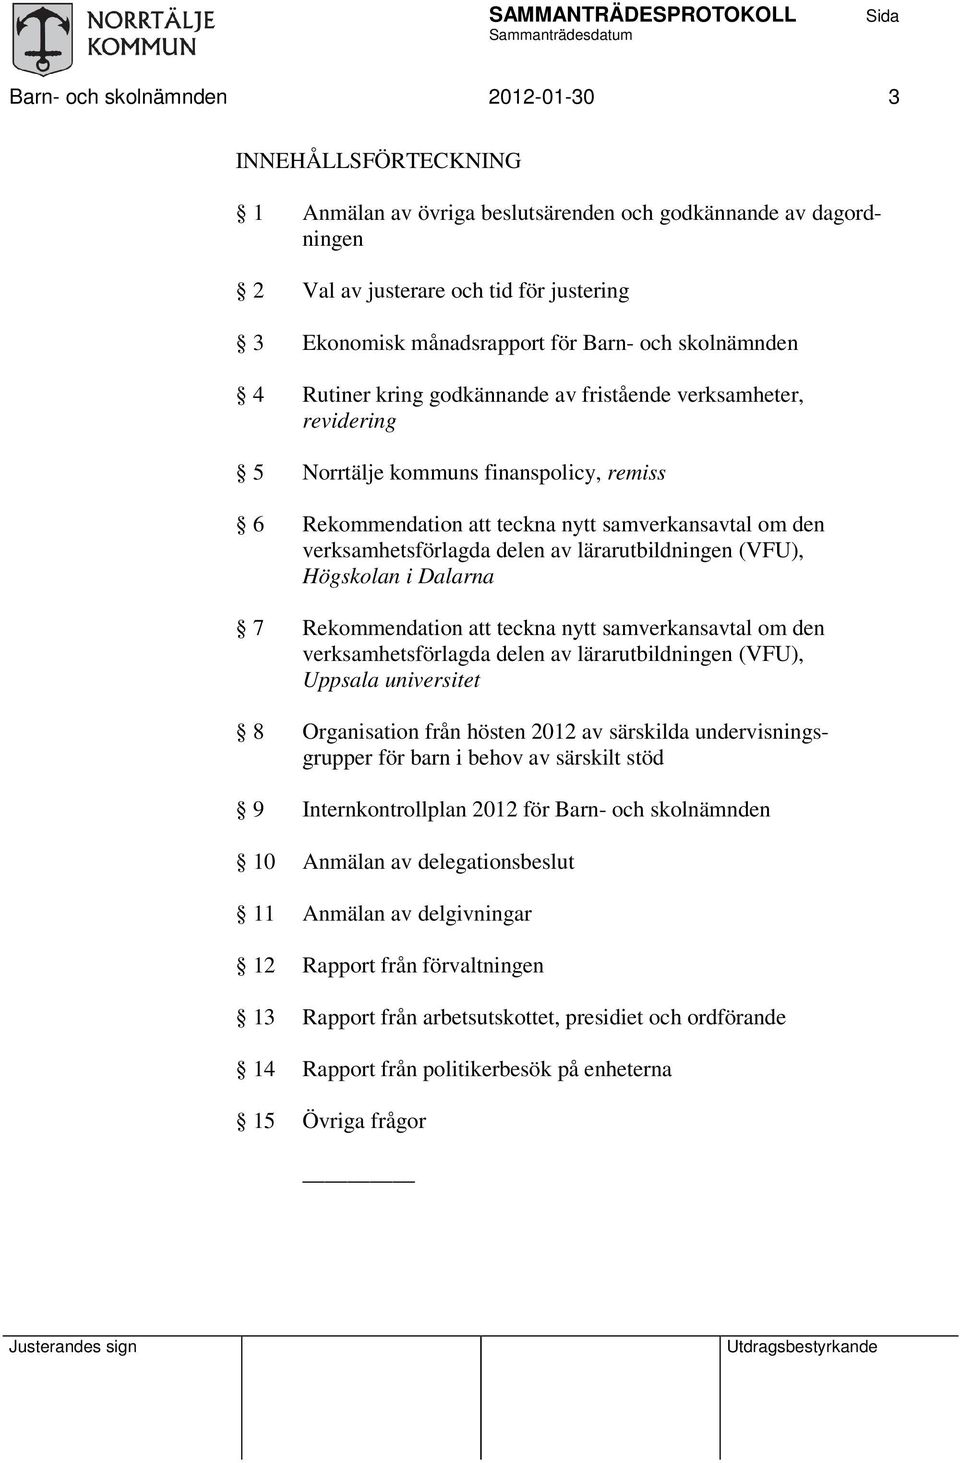 delen av lärarutbildningen (VFU), Högskolan i Dalarna 7 Rekommendation teckna nytt samverkansavtal om den verksamhetsförlagda delen av lärarutbildningen (VFU), Uppsala universitet 8 Organisation från